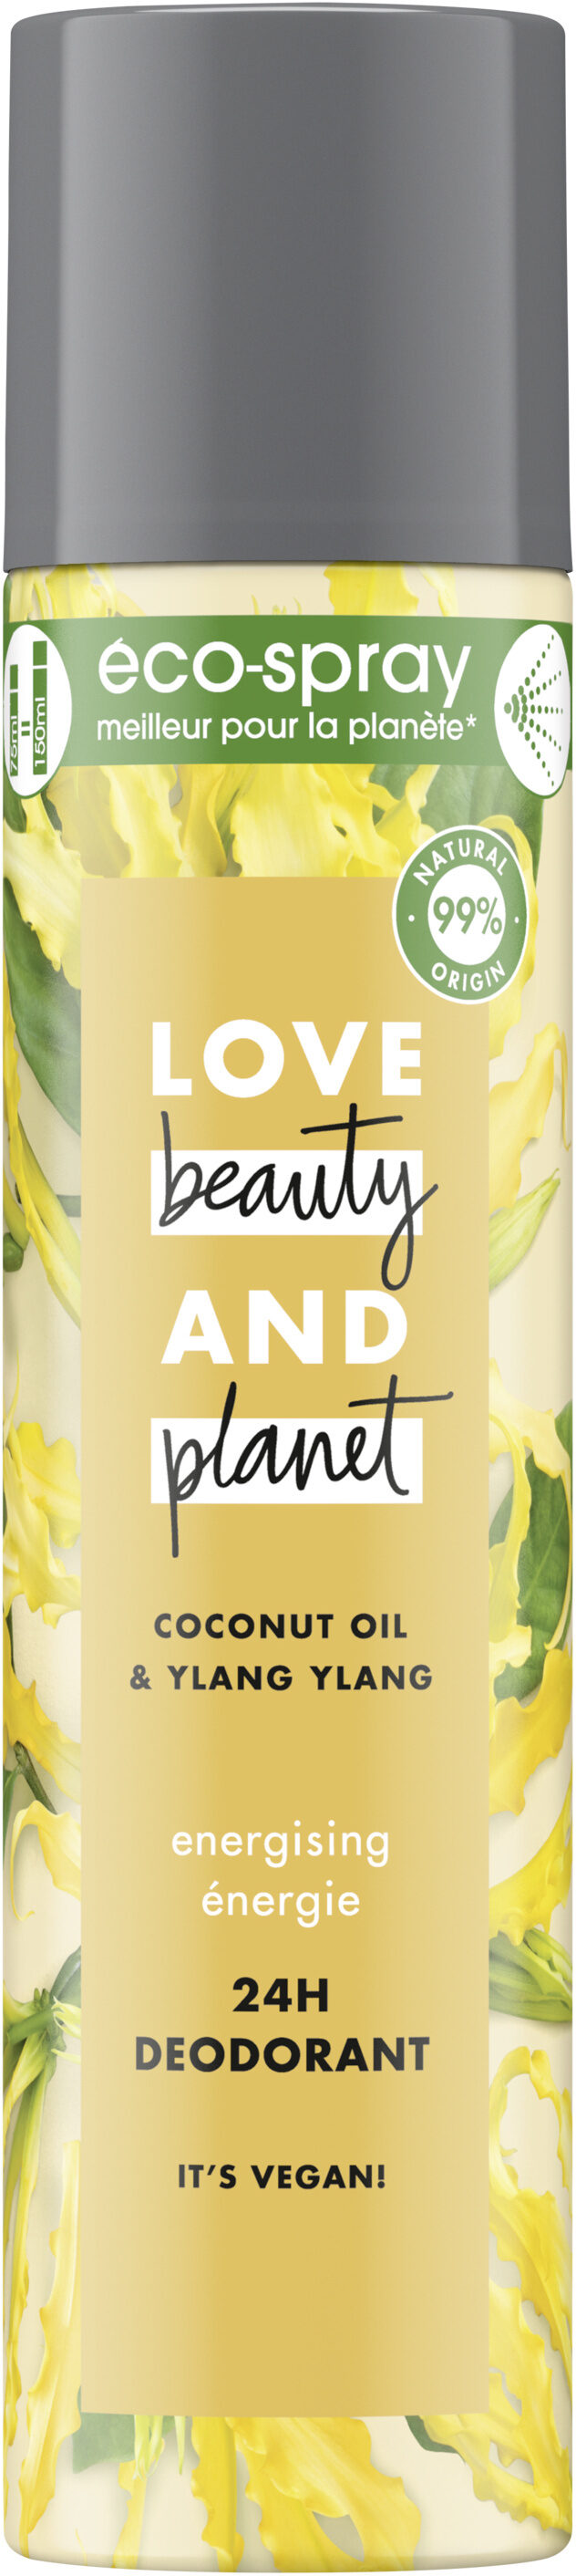 Love Beauty And Planet Déodorant Éco-Spray Énergie 75ml - Product - fr